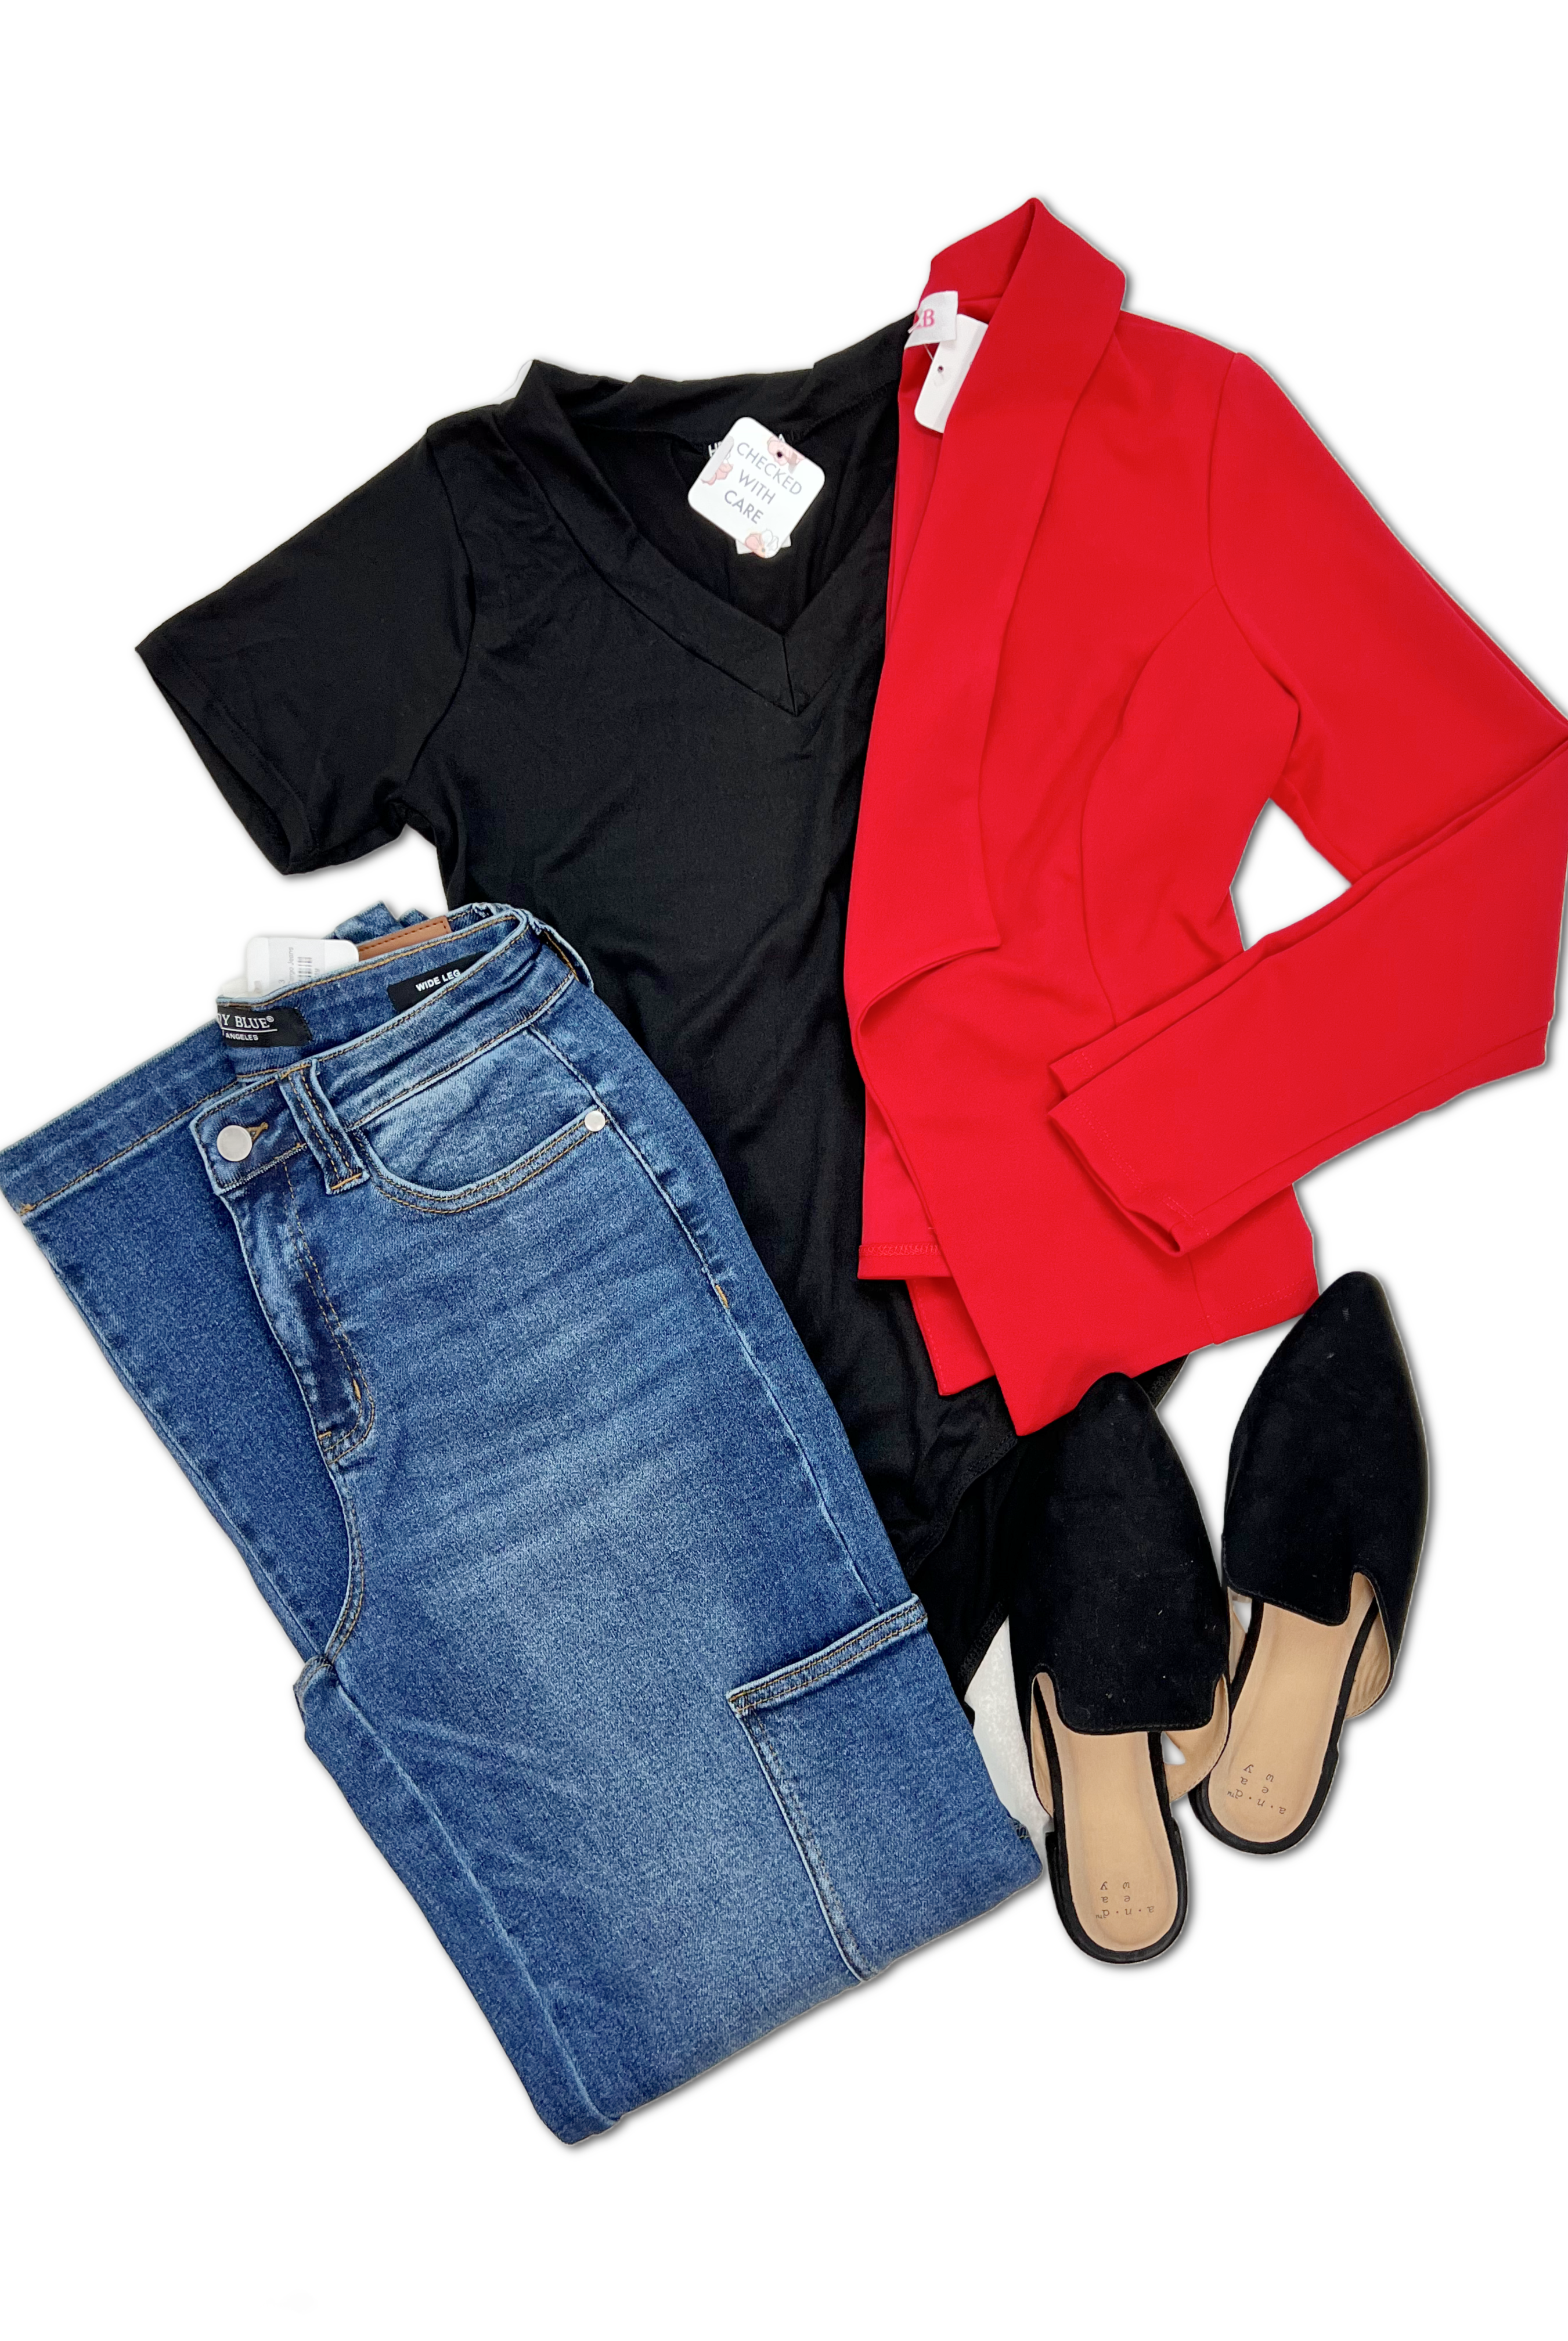 Blazin' Style - Red-Blazers-OOTD Boutique Simplified-Urban Threadz Boutique, Women's Fashion Boutique in Saugatuck, MI